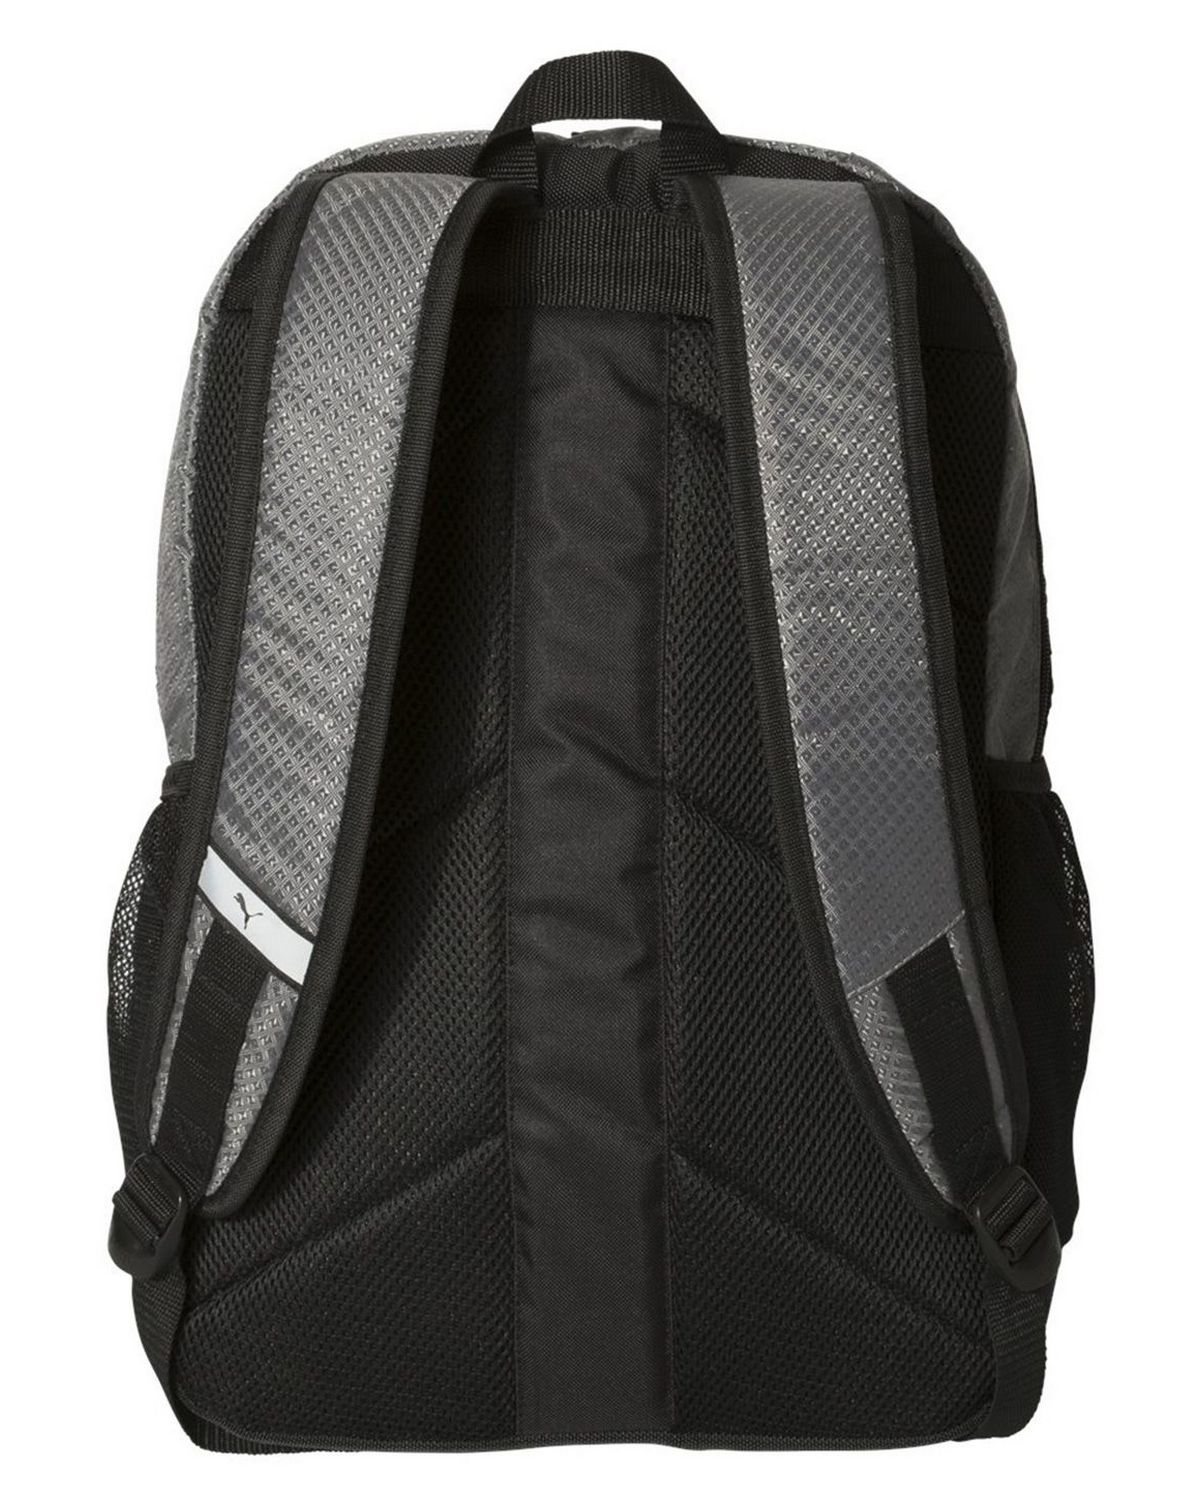 'Puma PSC1028 25L Backpack'